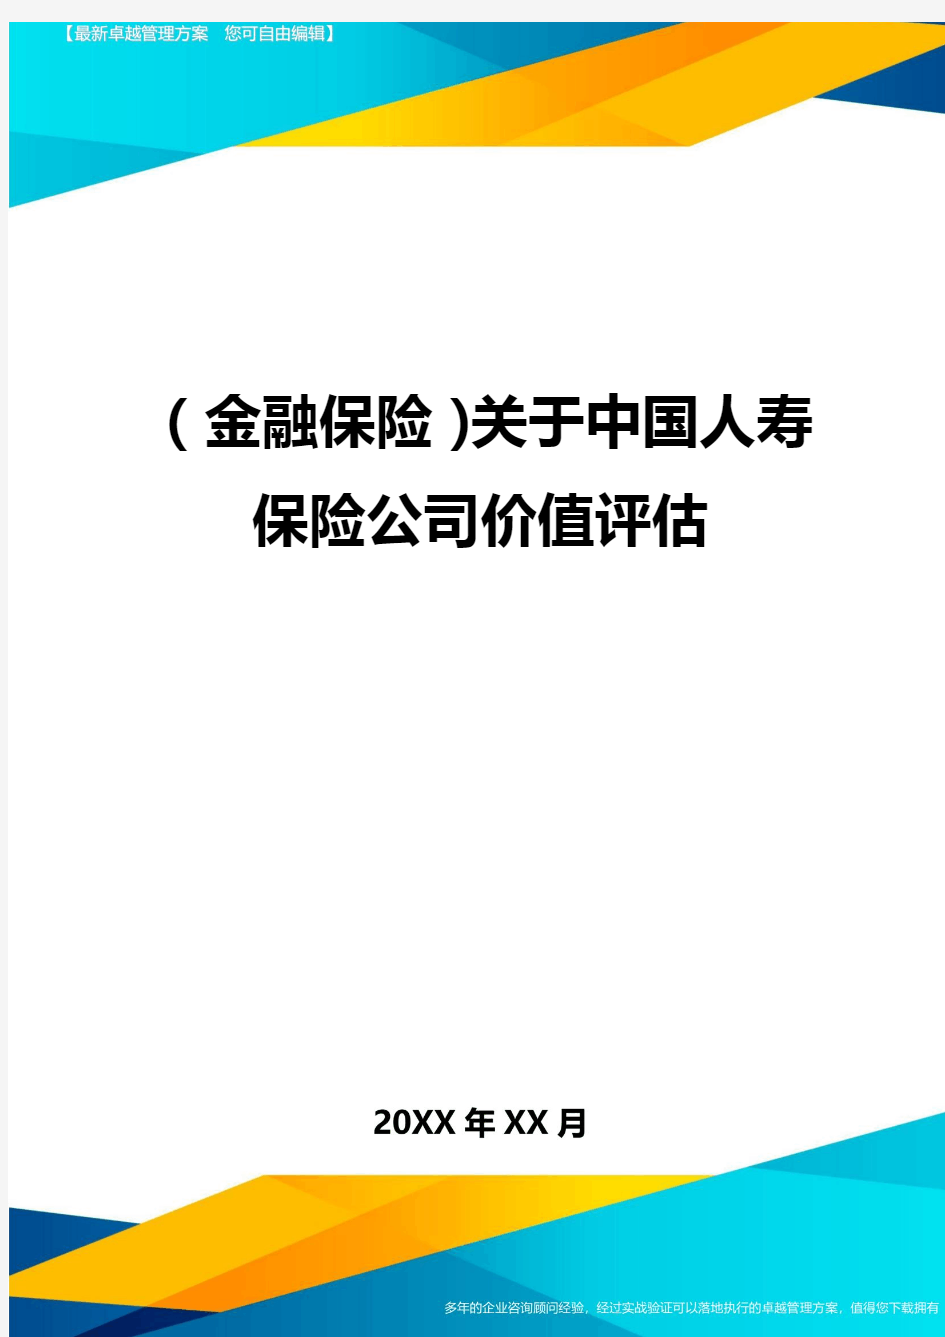 2020年(金融保险)关于中国人寿保险公司价值评估